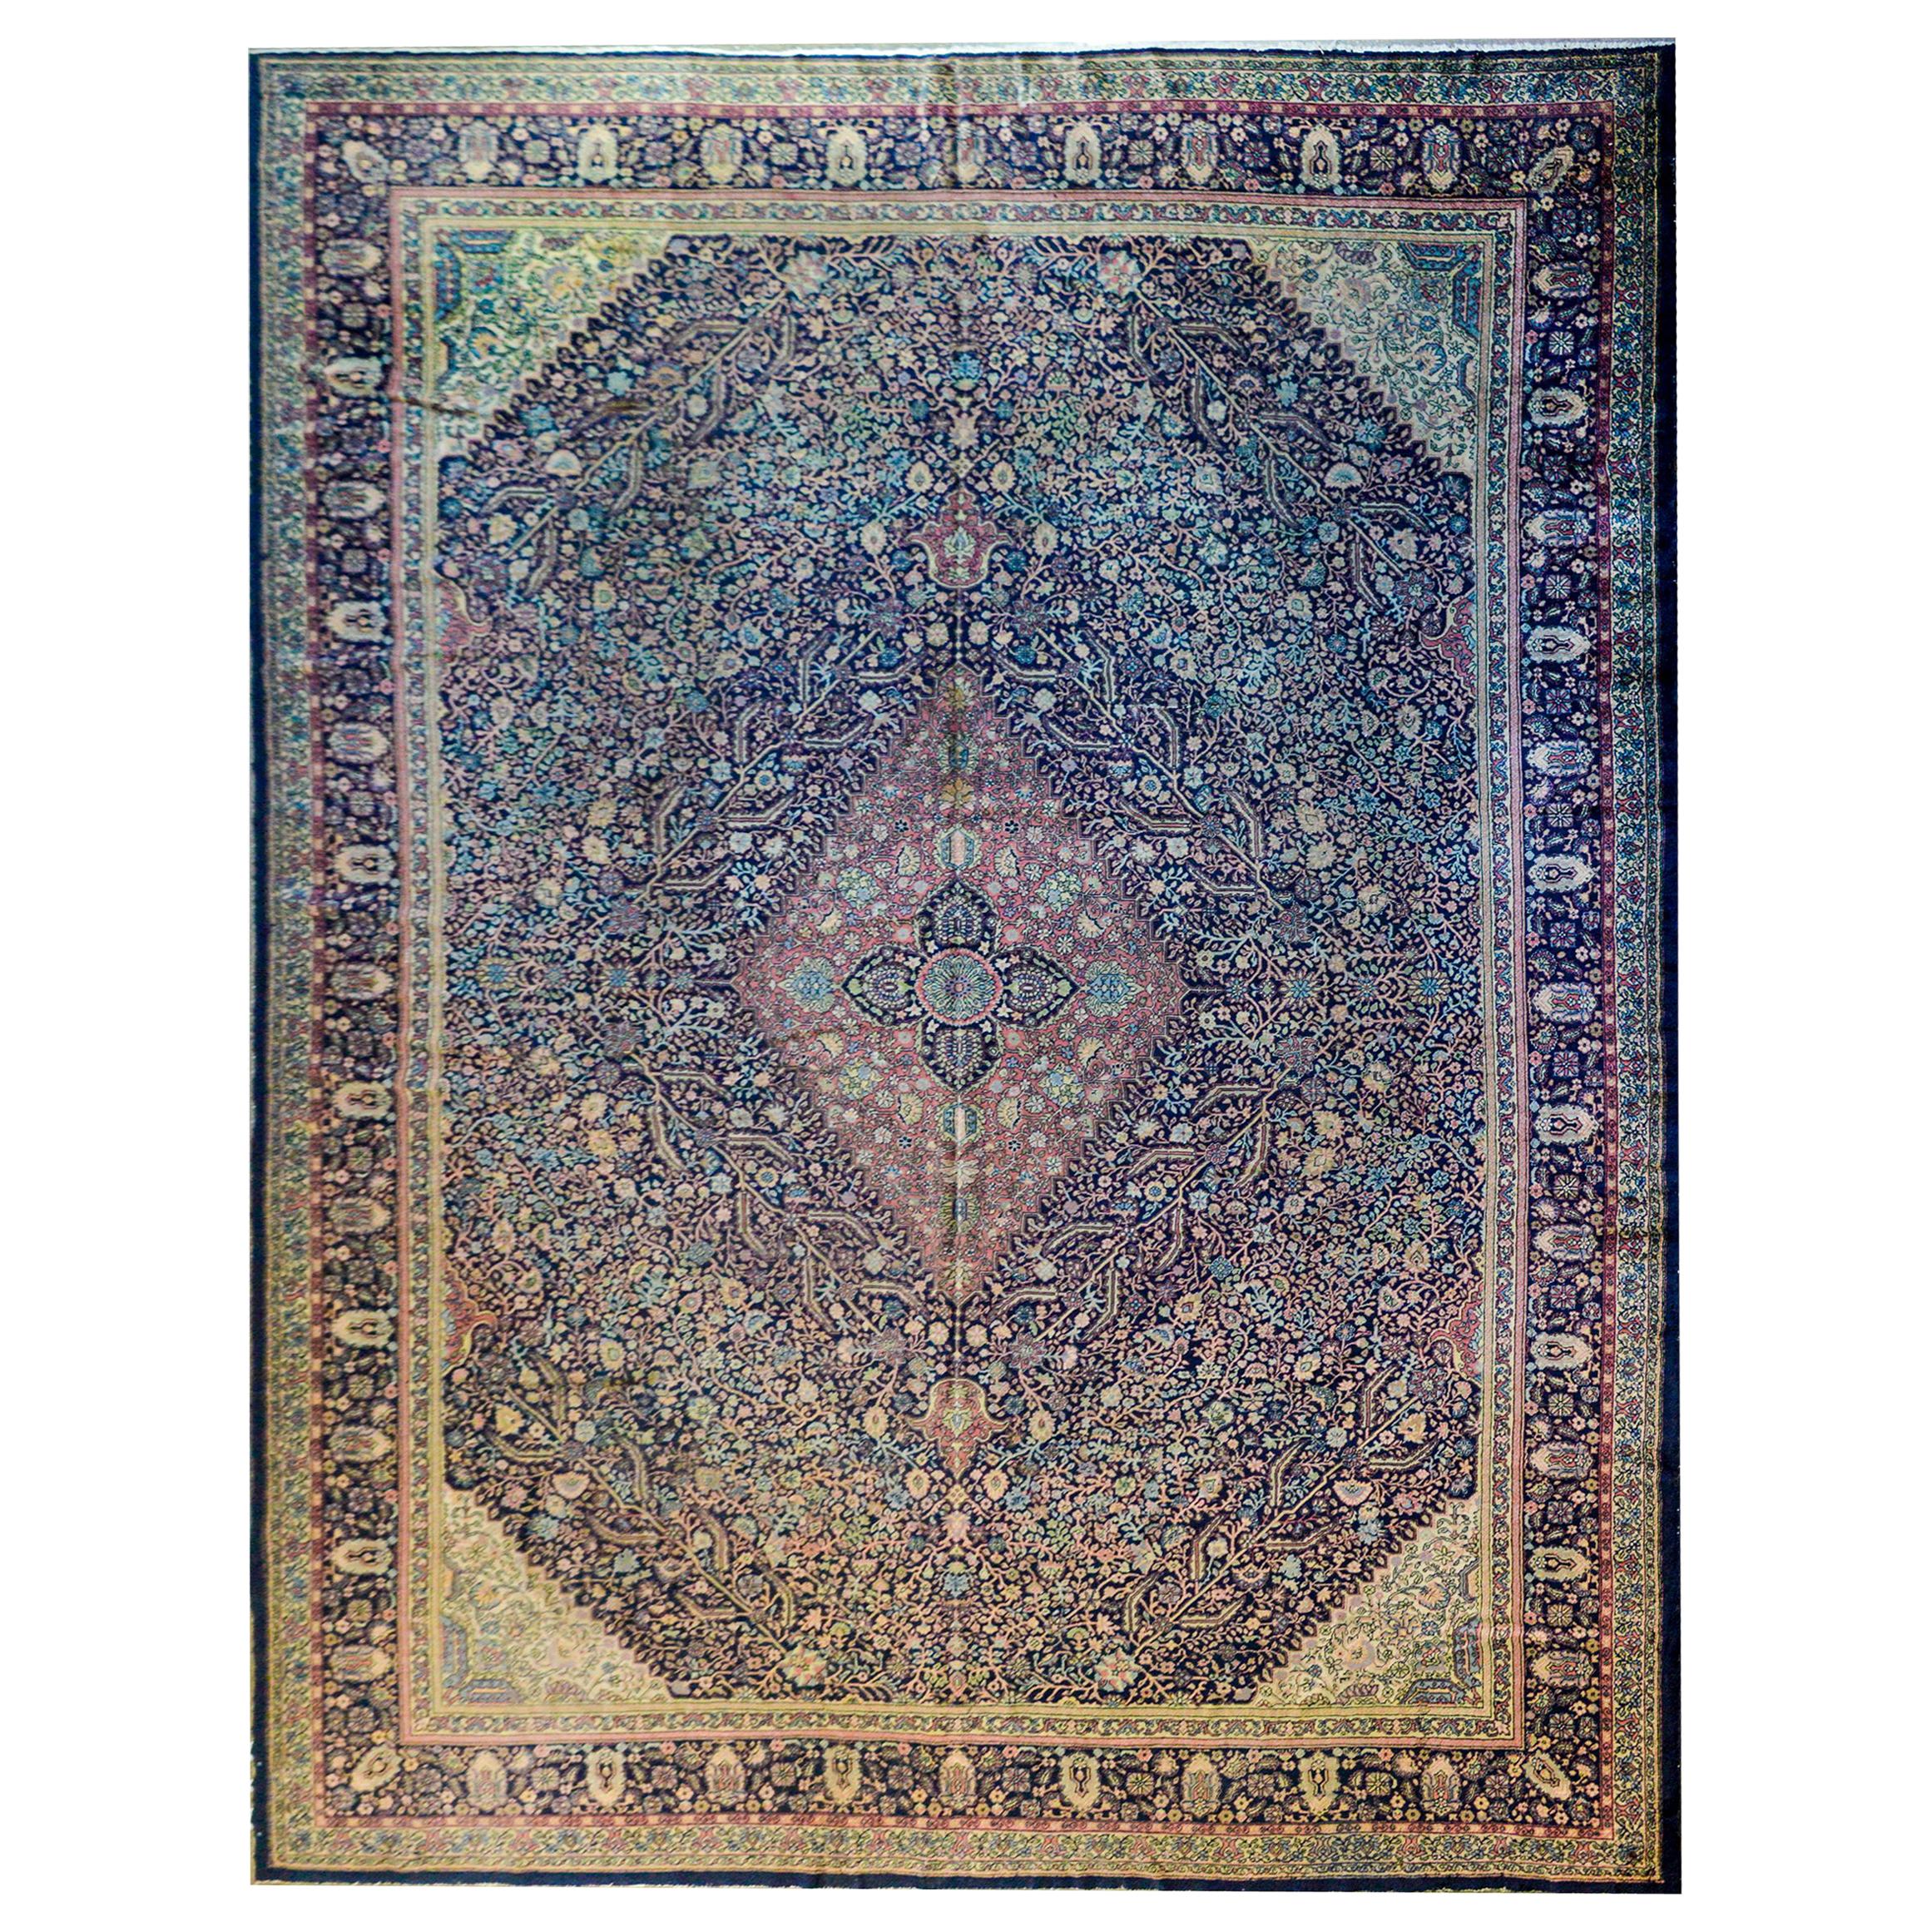 Wunderschöner Sivas-Teppich aus dem frühen 20. Jahrhundert